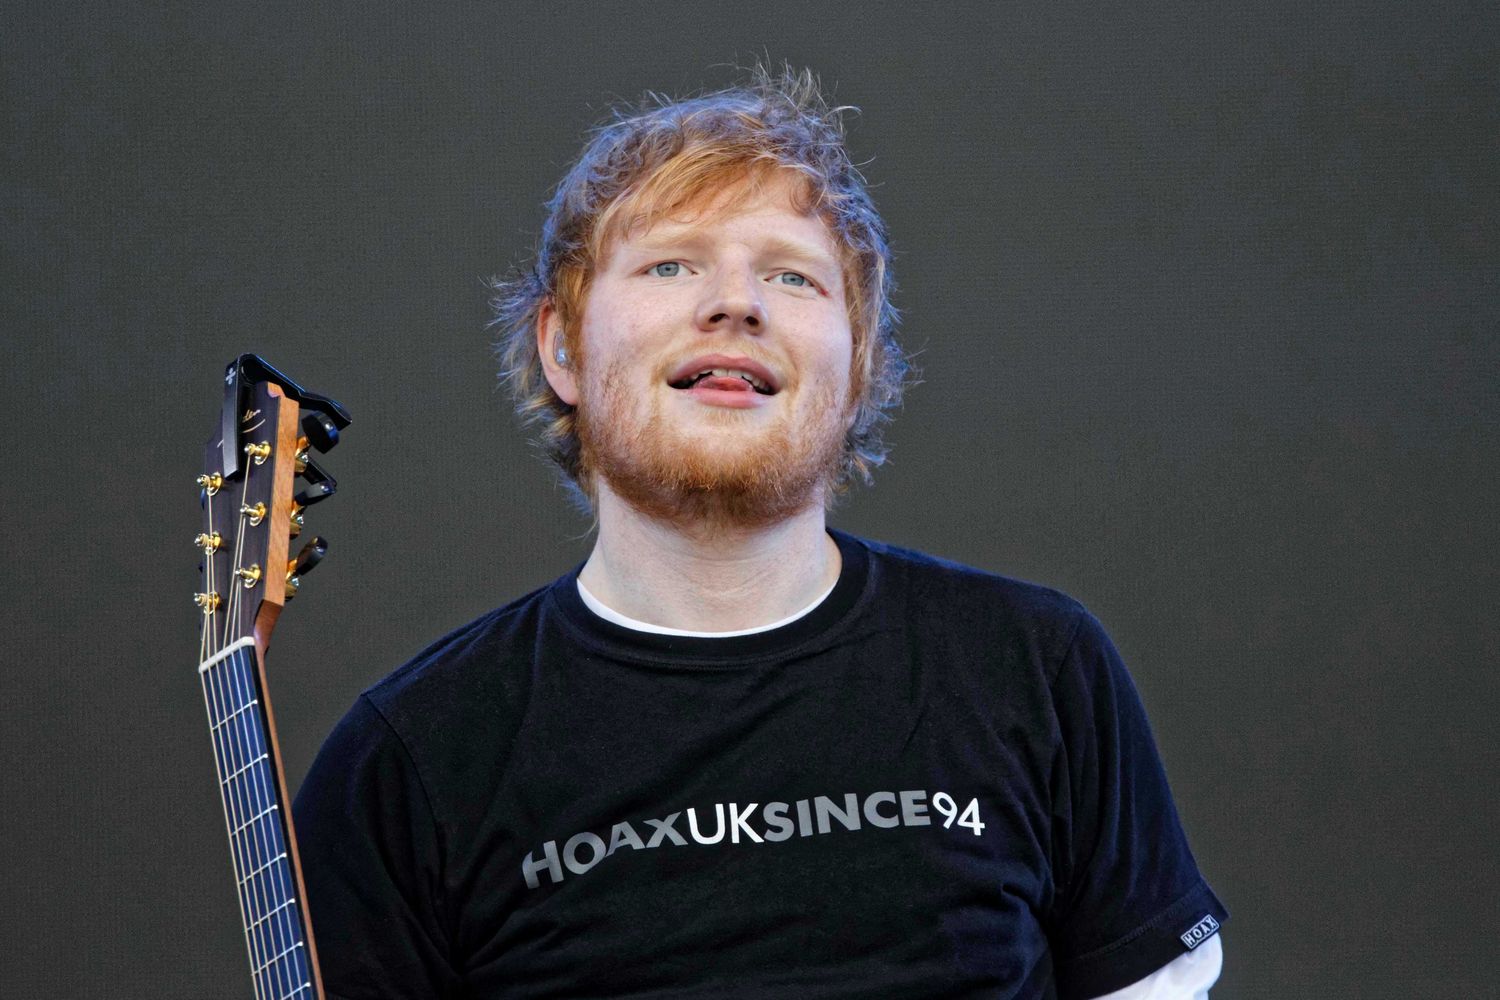 Ed Sheeran Songwriter Documentary: Where To Watch